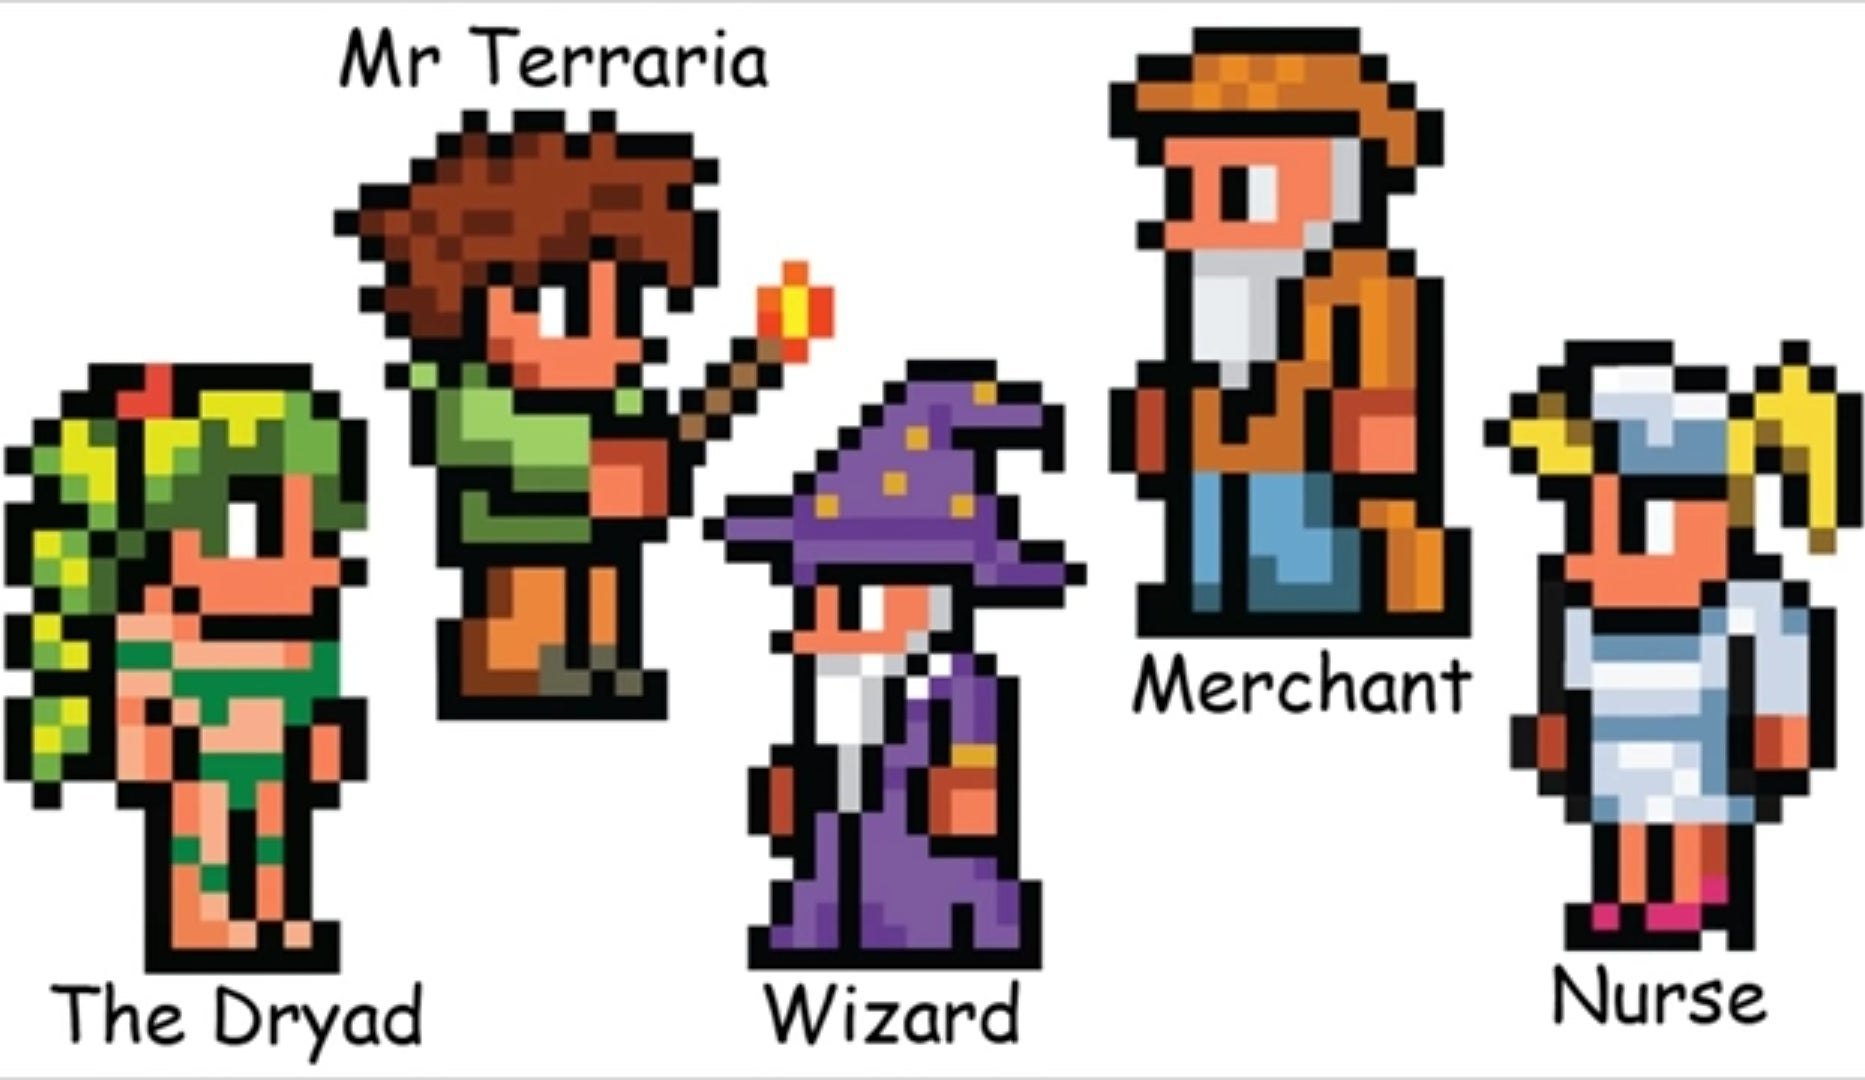 Hero terraria. Игра террария герои. Terraria герои. Персонаж из игры Terraria. Пиксель арт террария персонажи.